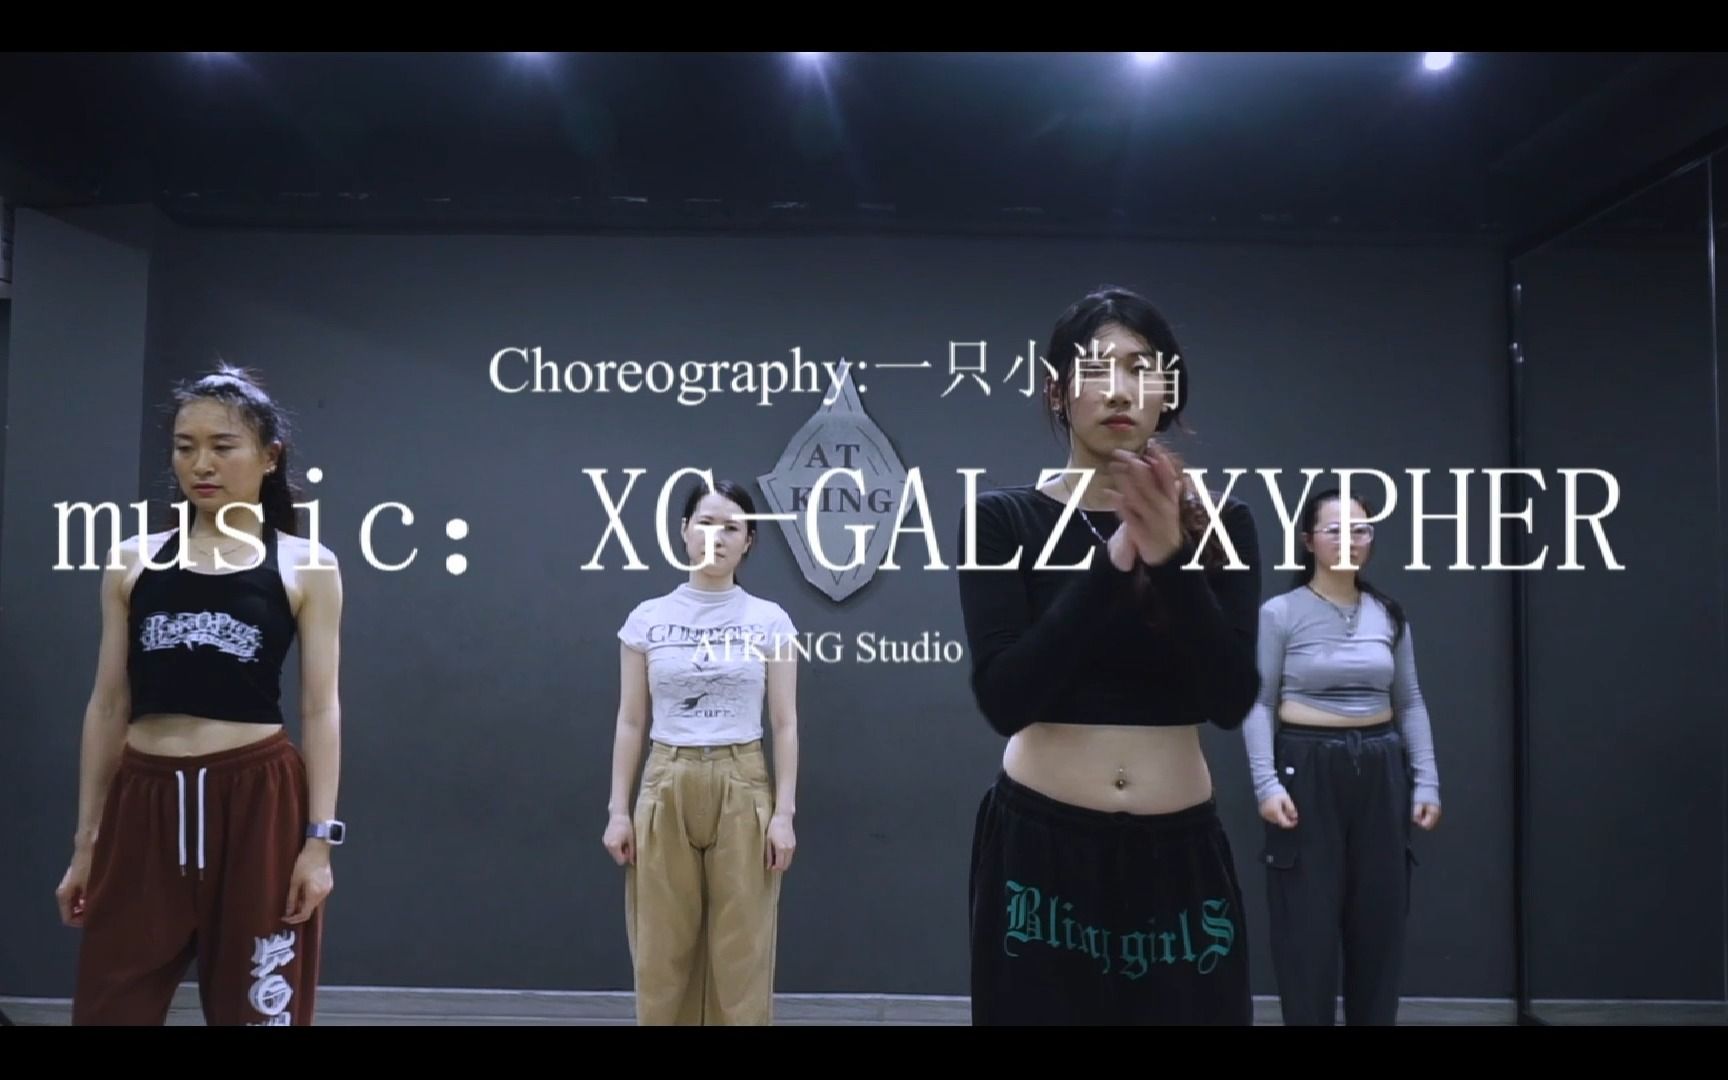 XG-GALZ XYPHER 舞蹈